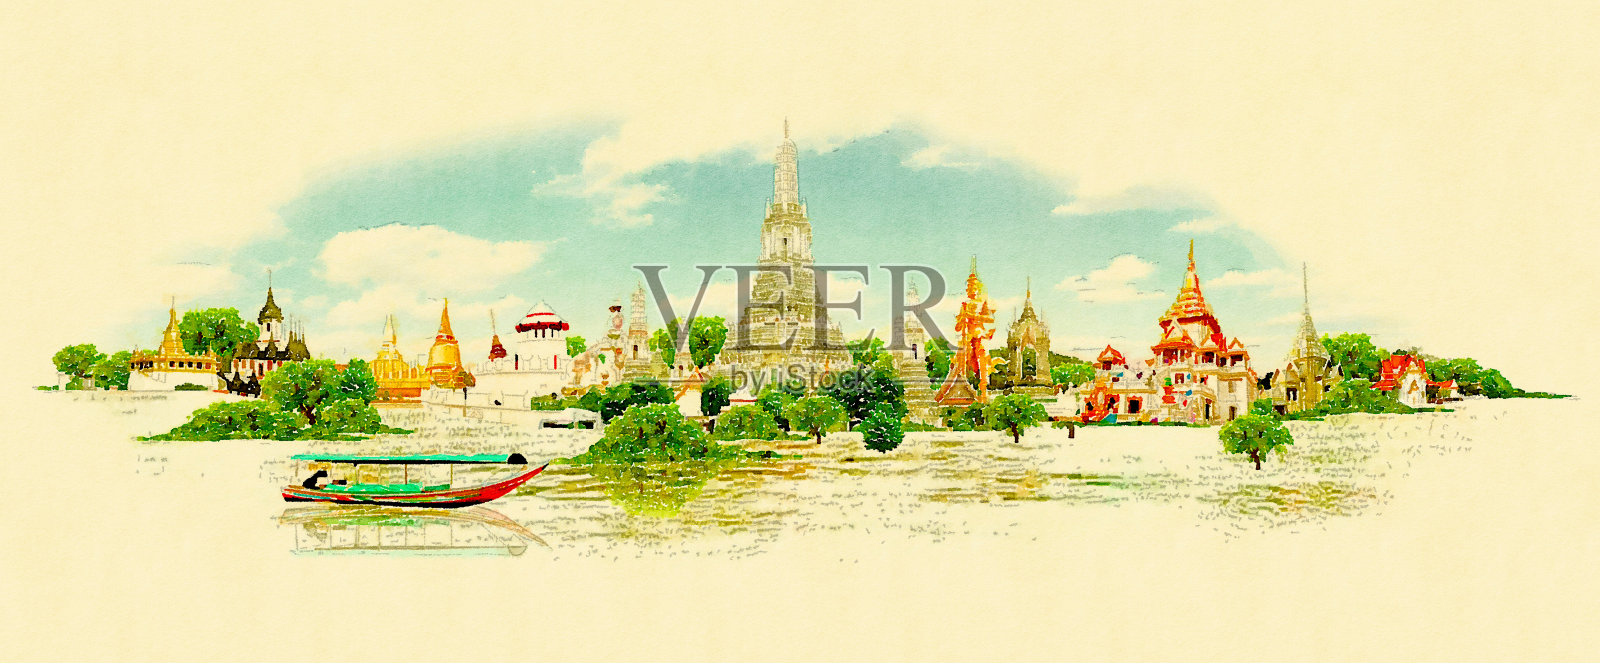 高分辨率全景水彩曼谷城市插图插画图片素材